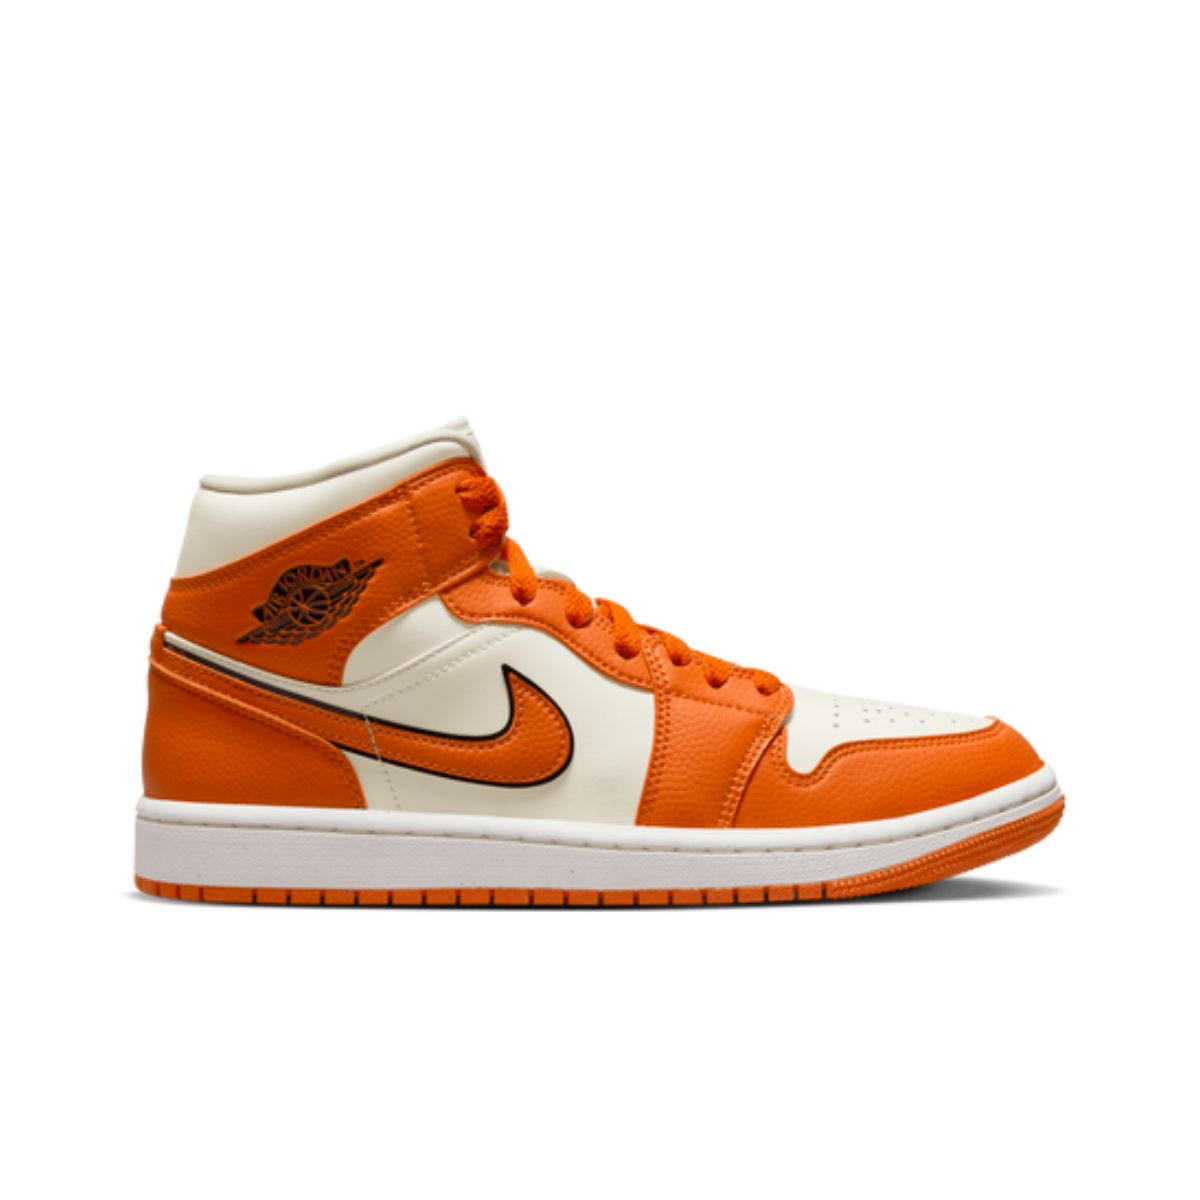 Orange Jordans Replacement Shoelaces - Kicks Shoelaces